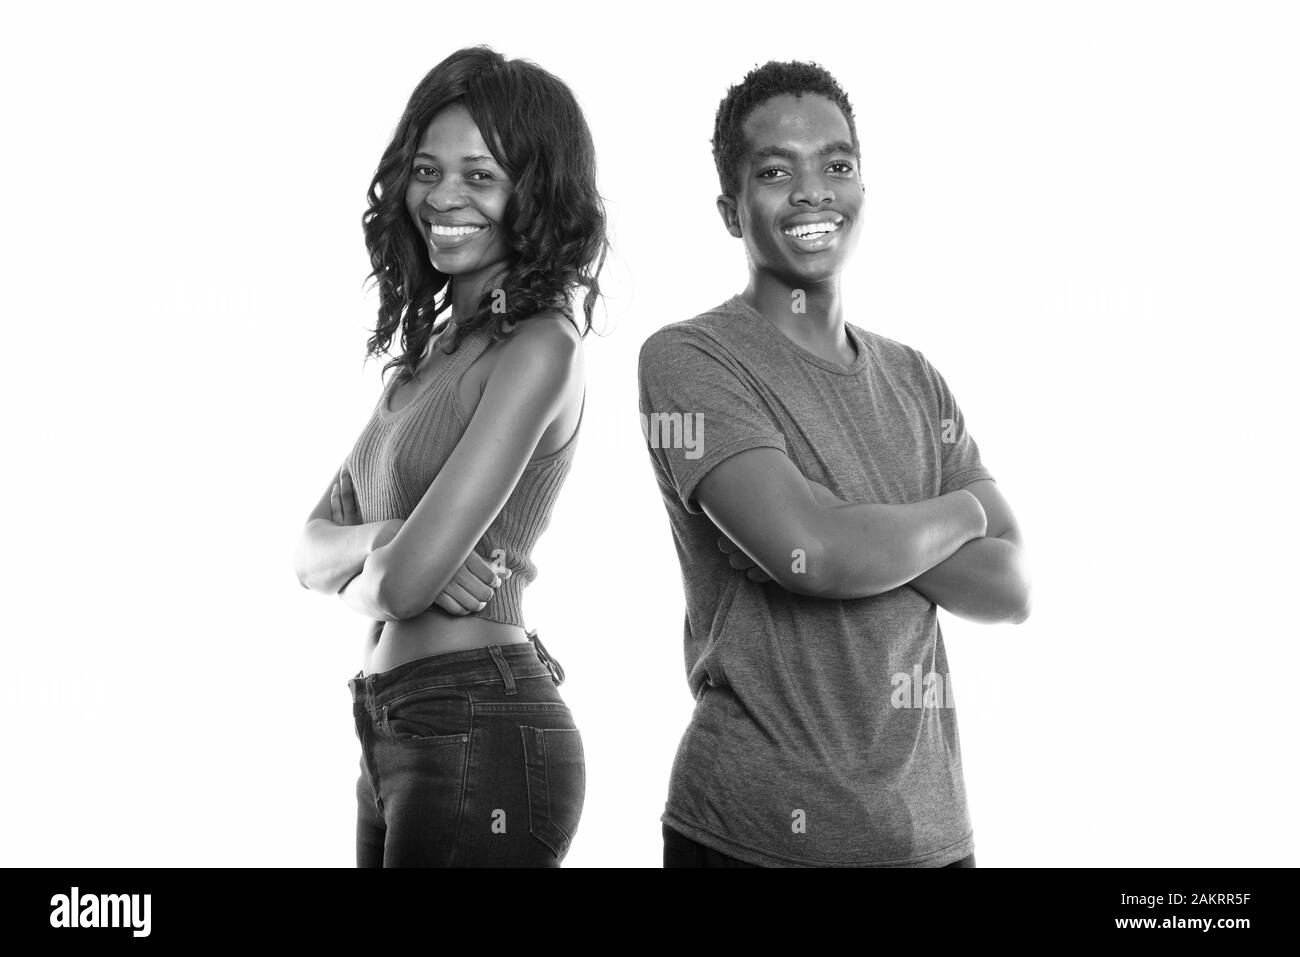 Heureux les noires sont soeur et frère smiling with arms crossed du Botswana Banque D'Images